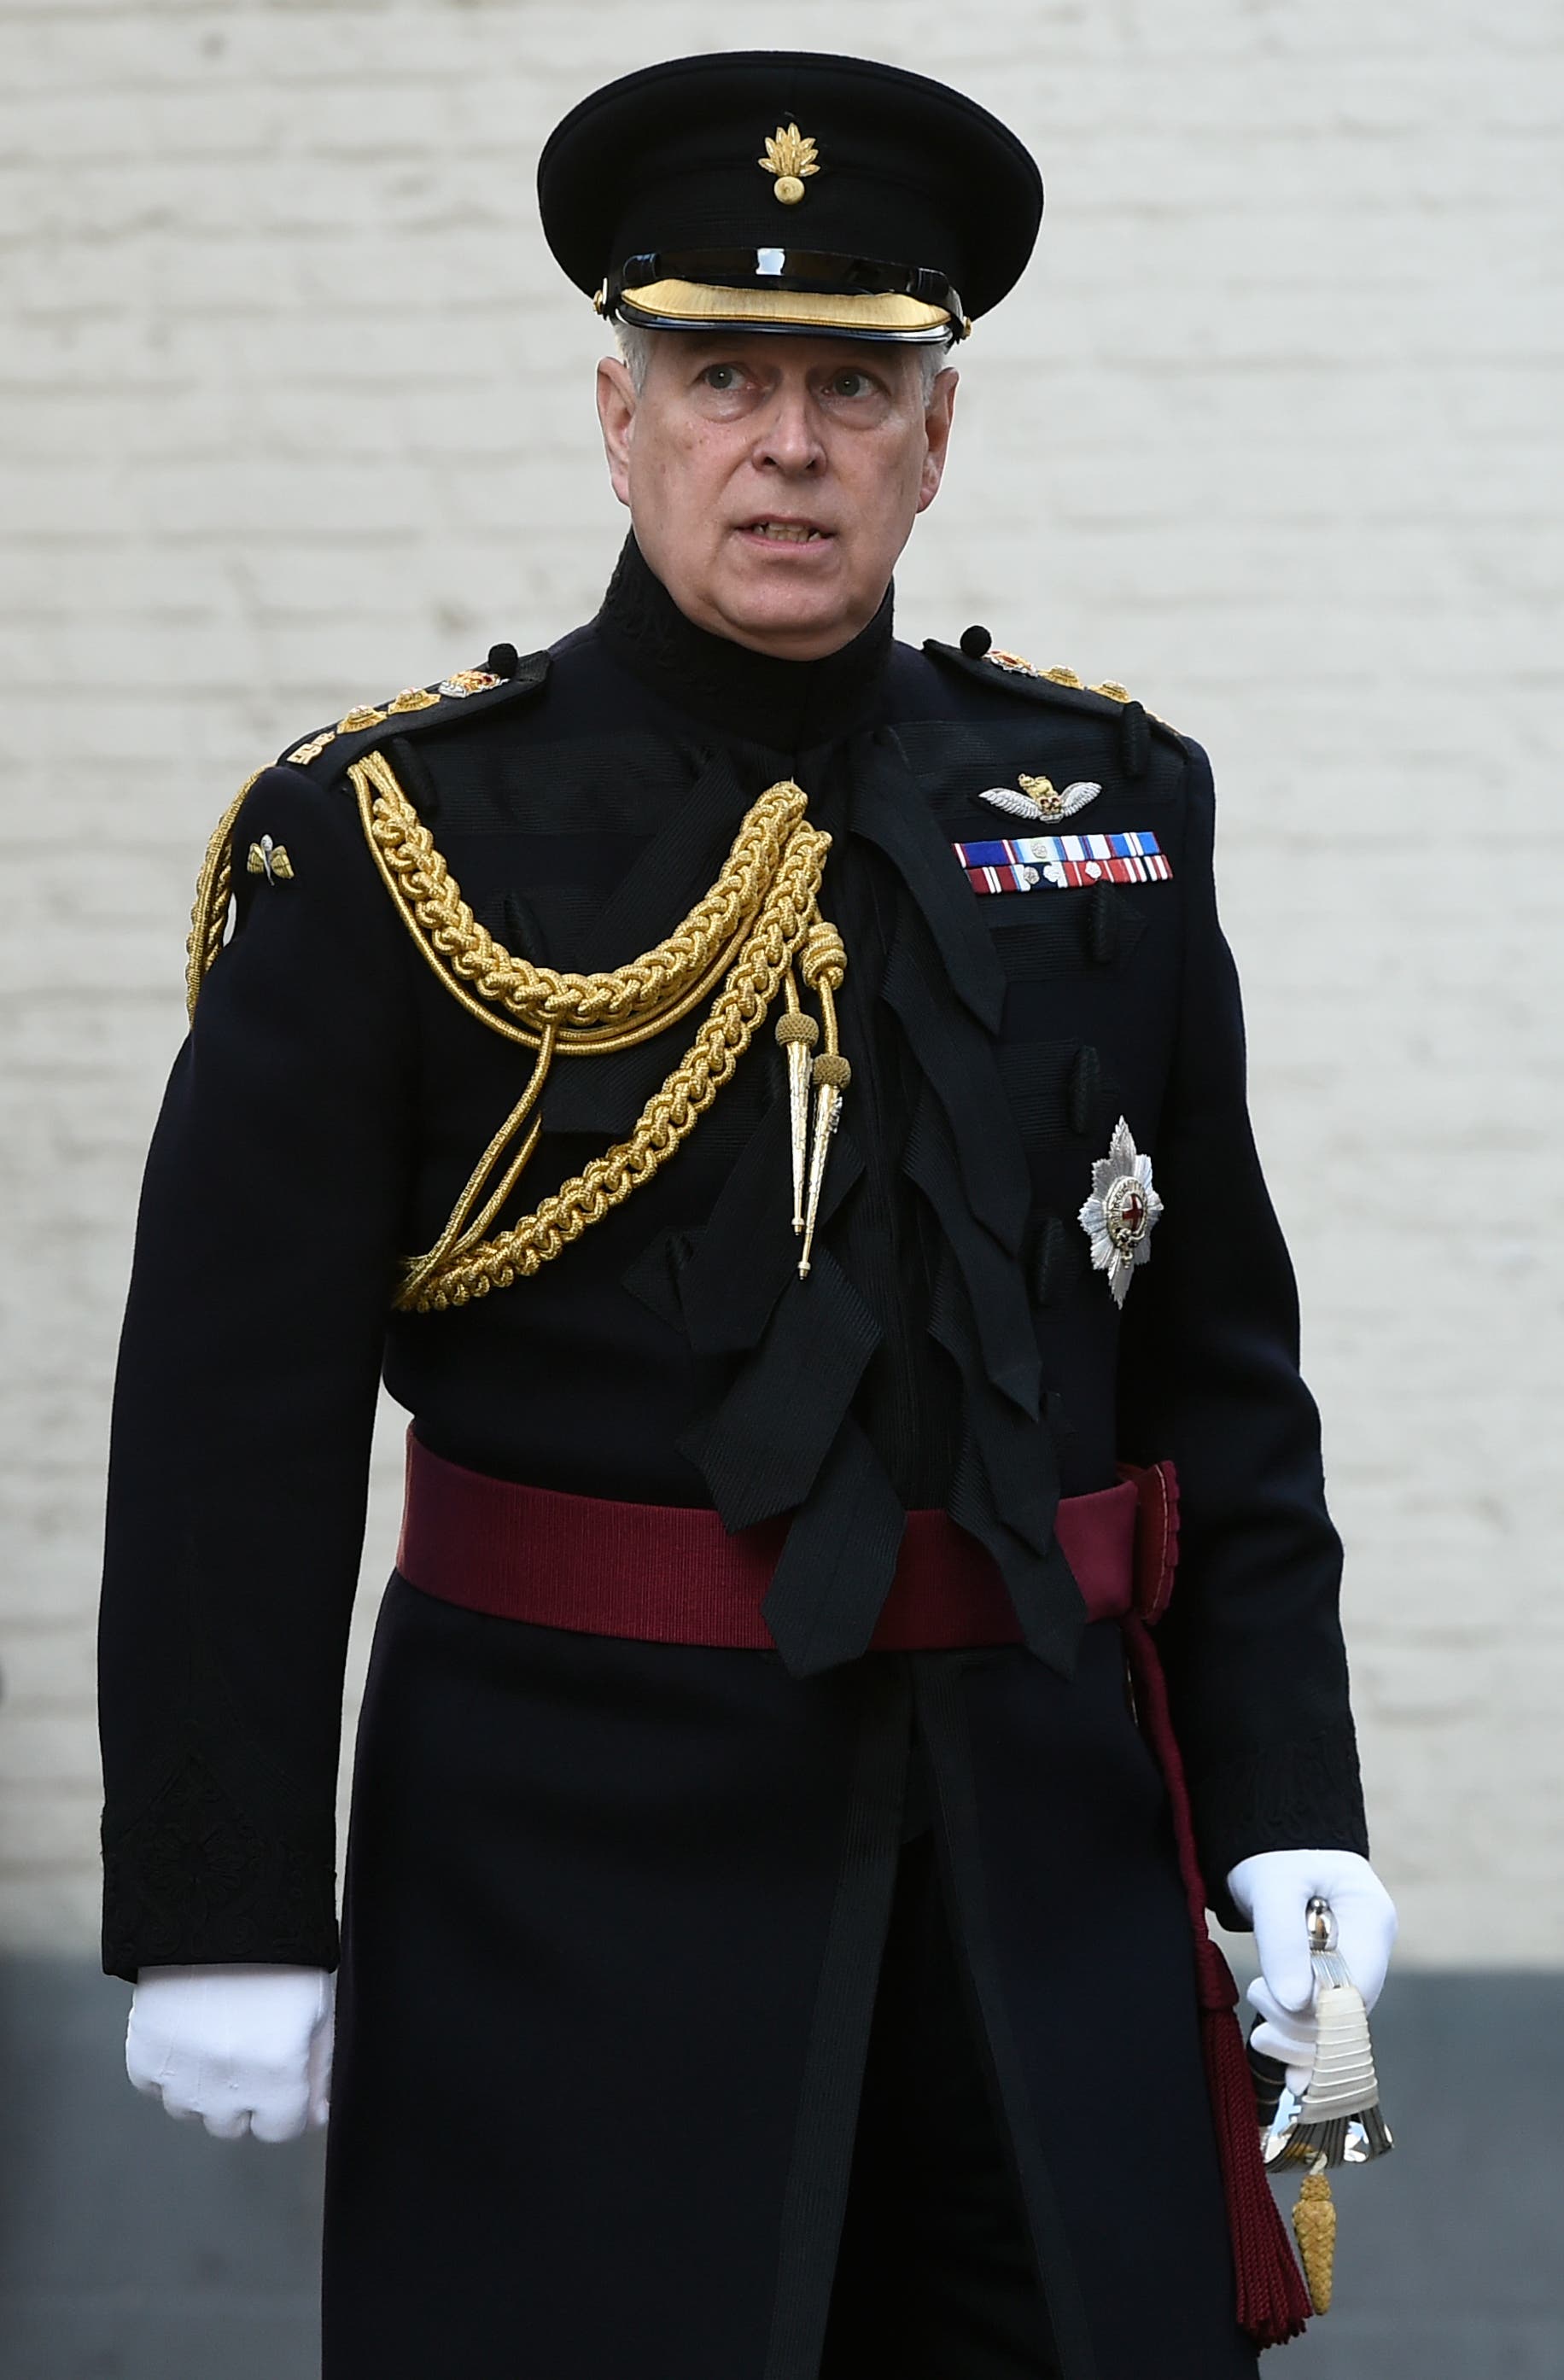 الأمير أندرو بلباسه العسكري خلال مناسبة في 2019